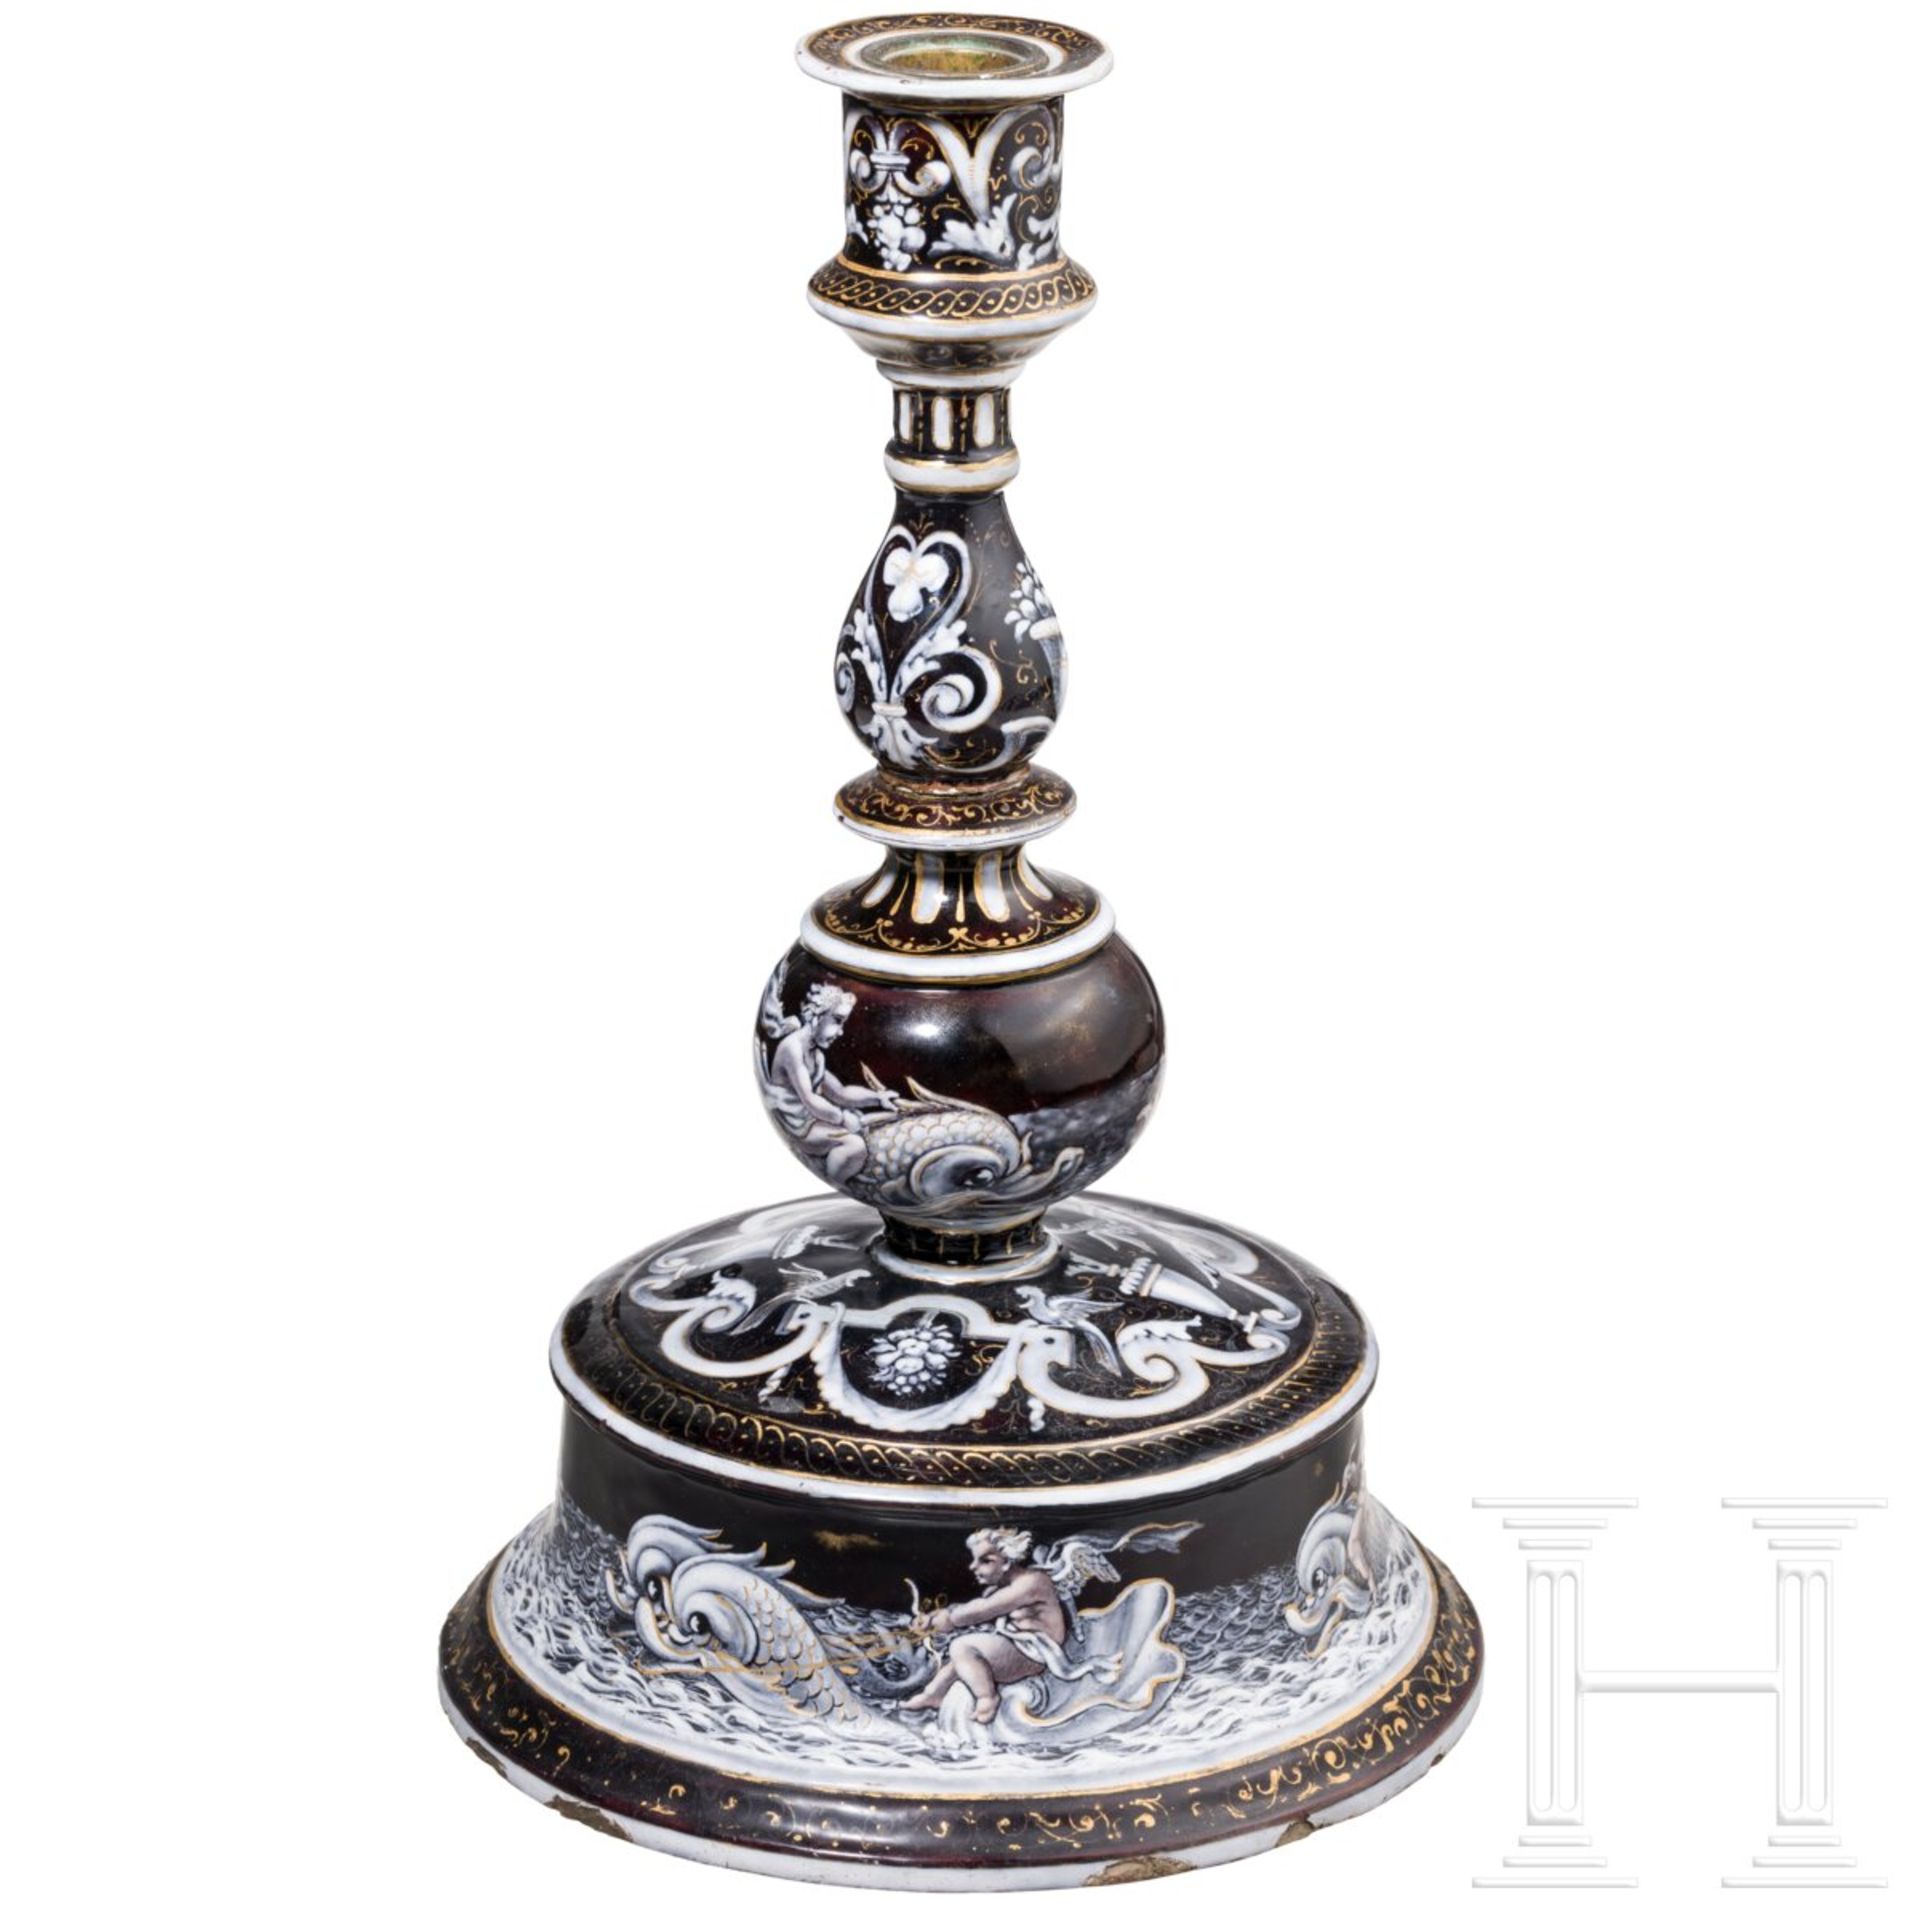 Großer emaillierter Glockenfußleuchter im Stil der Renaissance, Limoges, 19. Jhdt. oder früher - Image 2 of 5